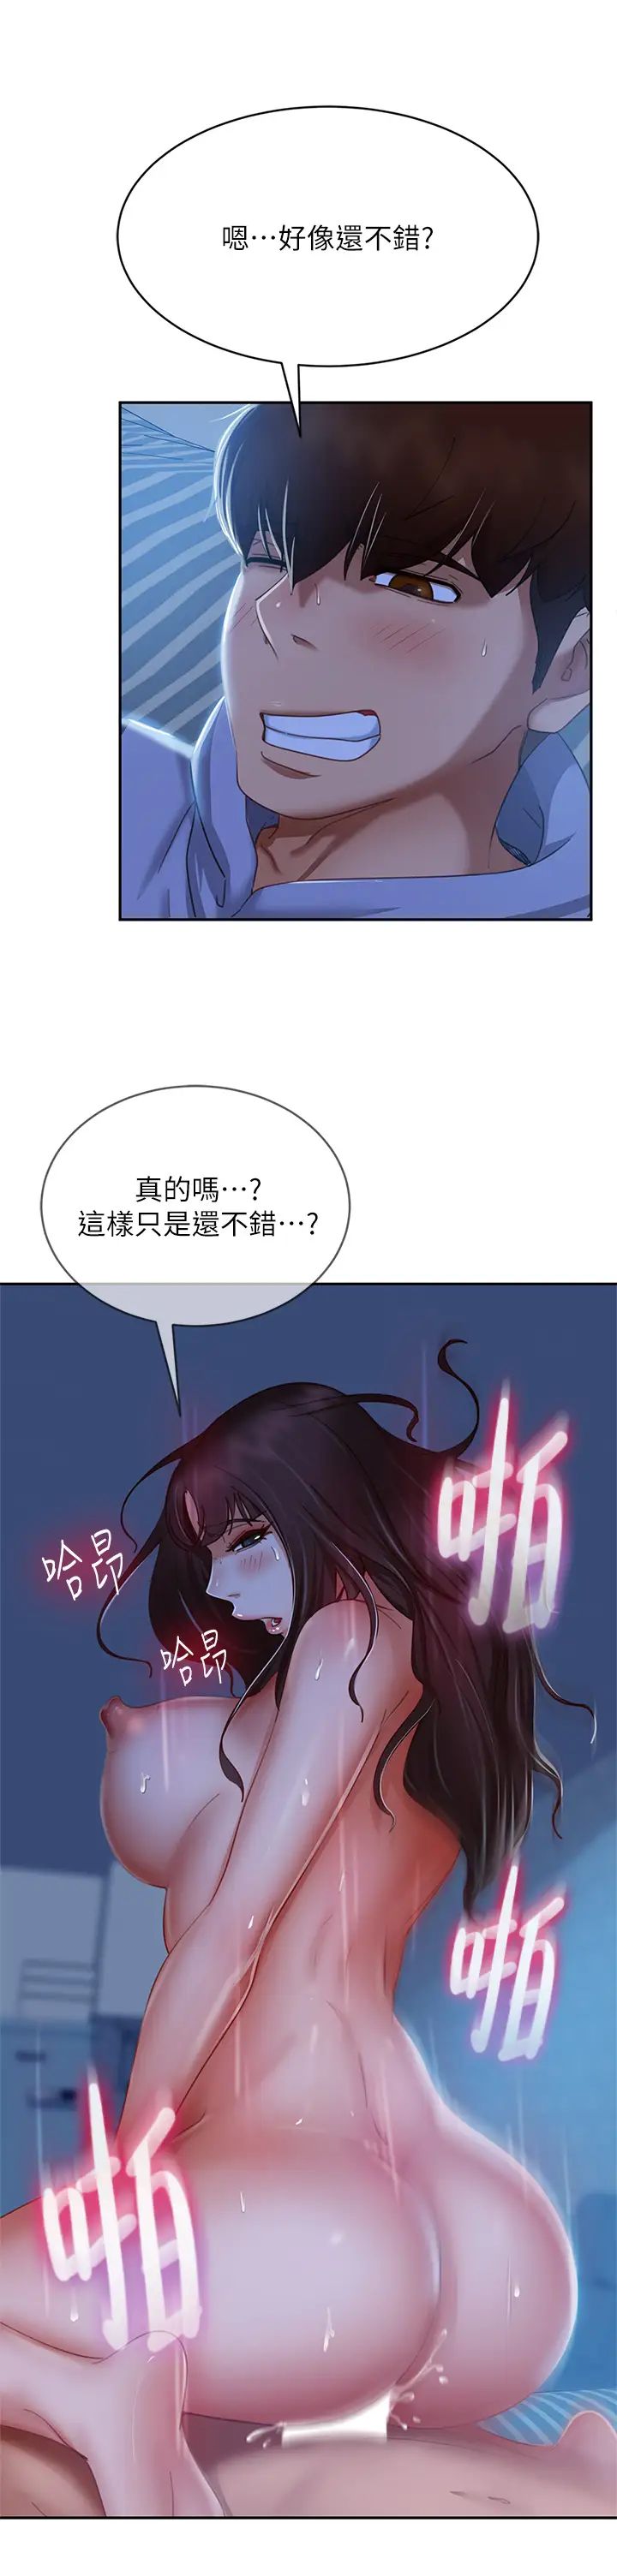 韩国污漫画 不良女房客 第50话射满娜丽的嘴巴 9